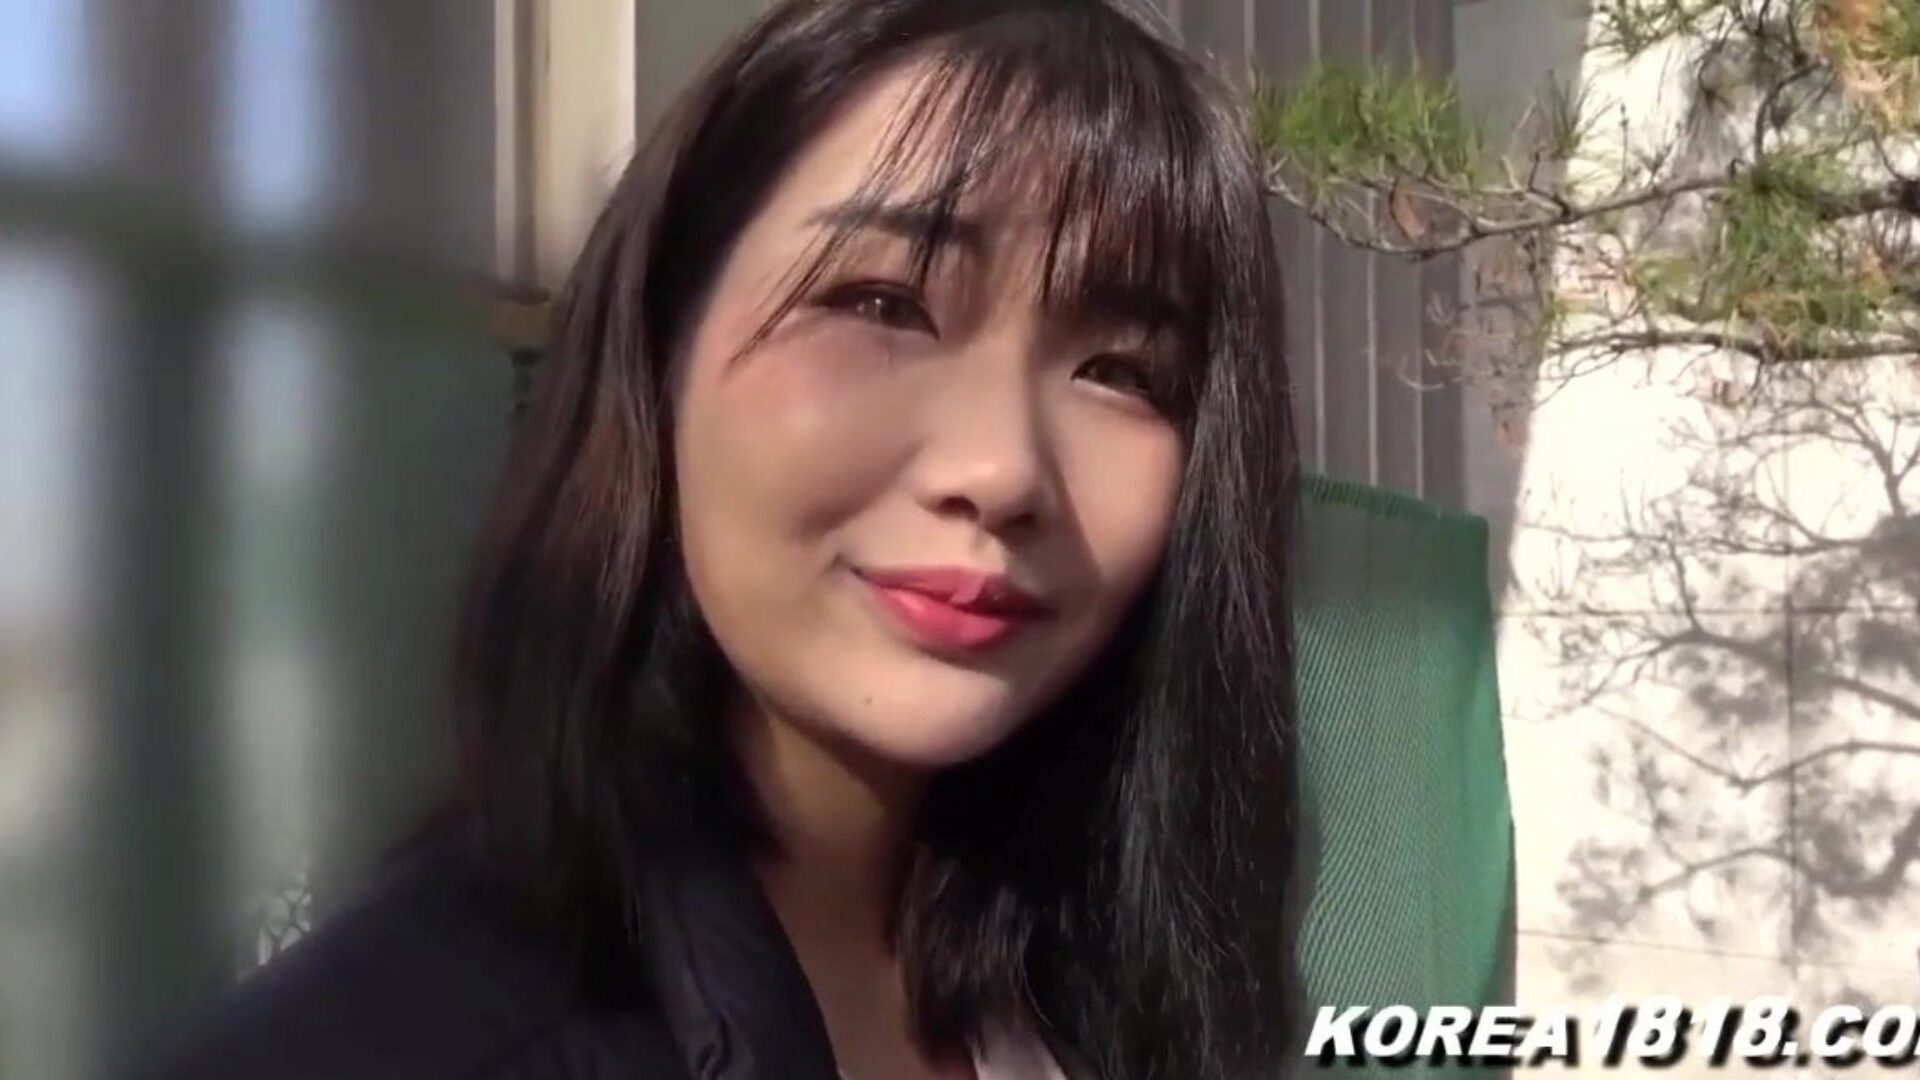 koreańskie porno super gorąca koreańska dziwka zostaje wyruchana